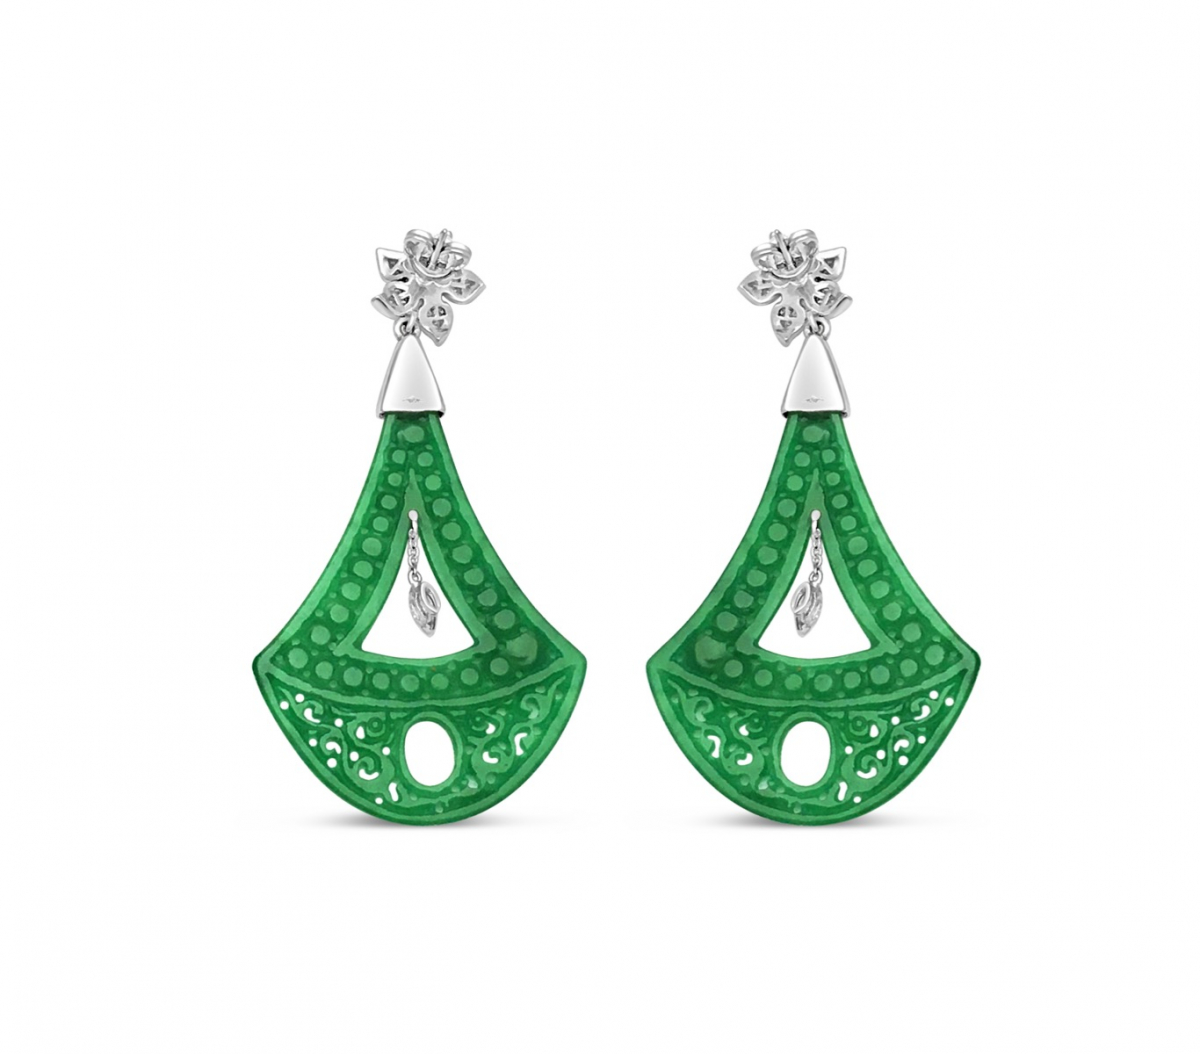 Green Jade Chandelier Earrings with Diamonds in 18 K White Gold